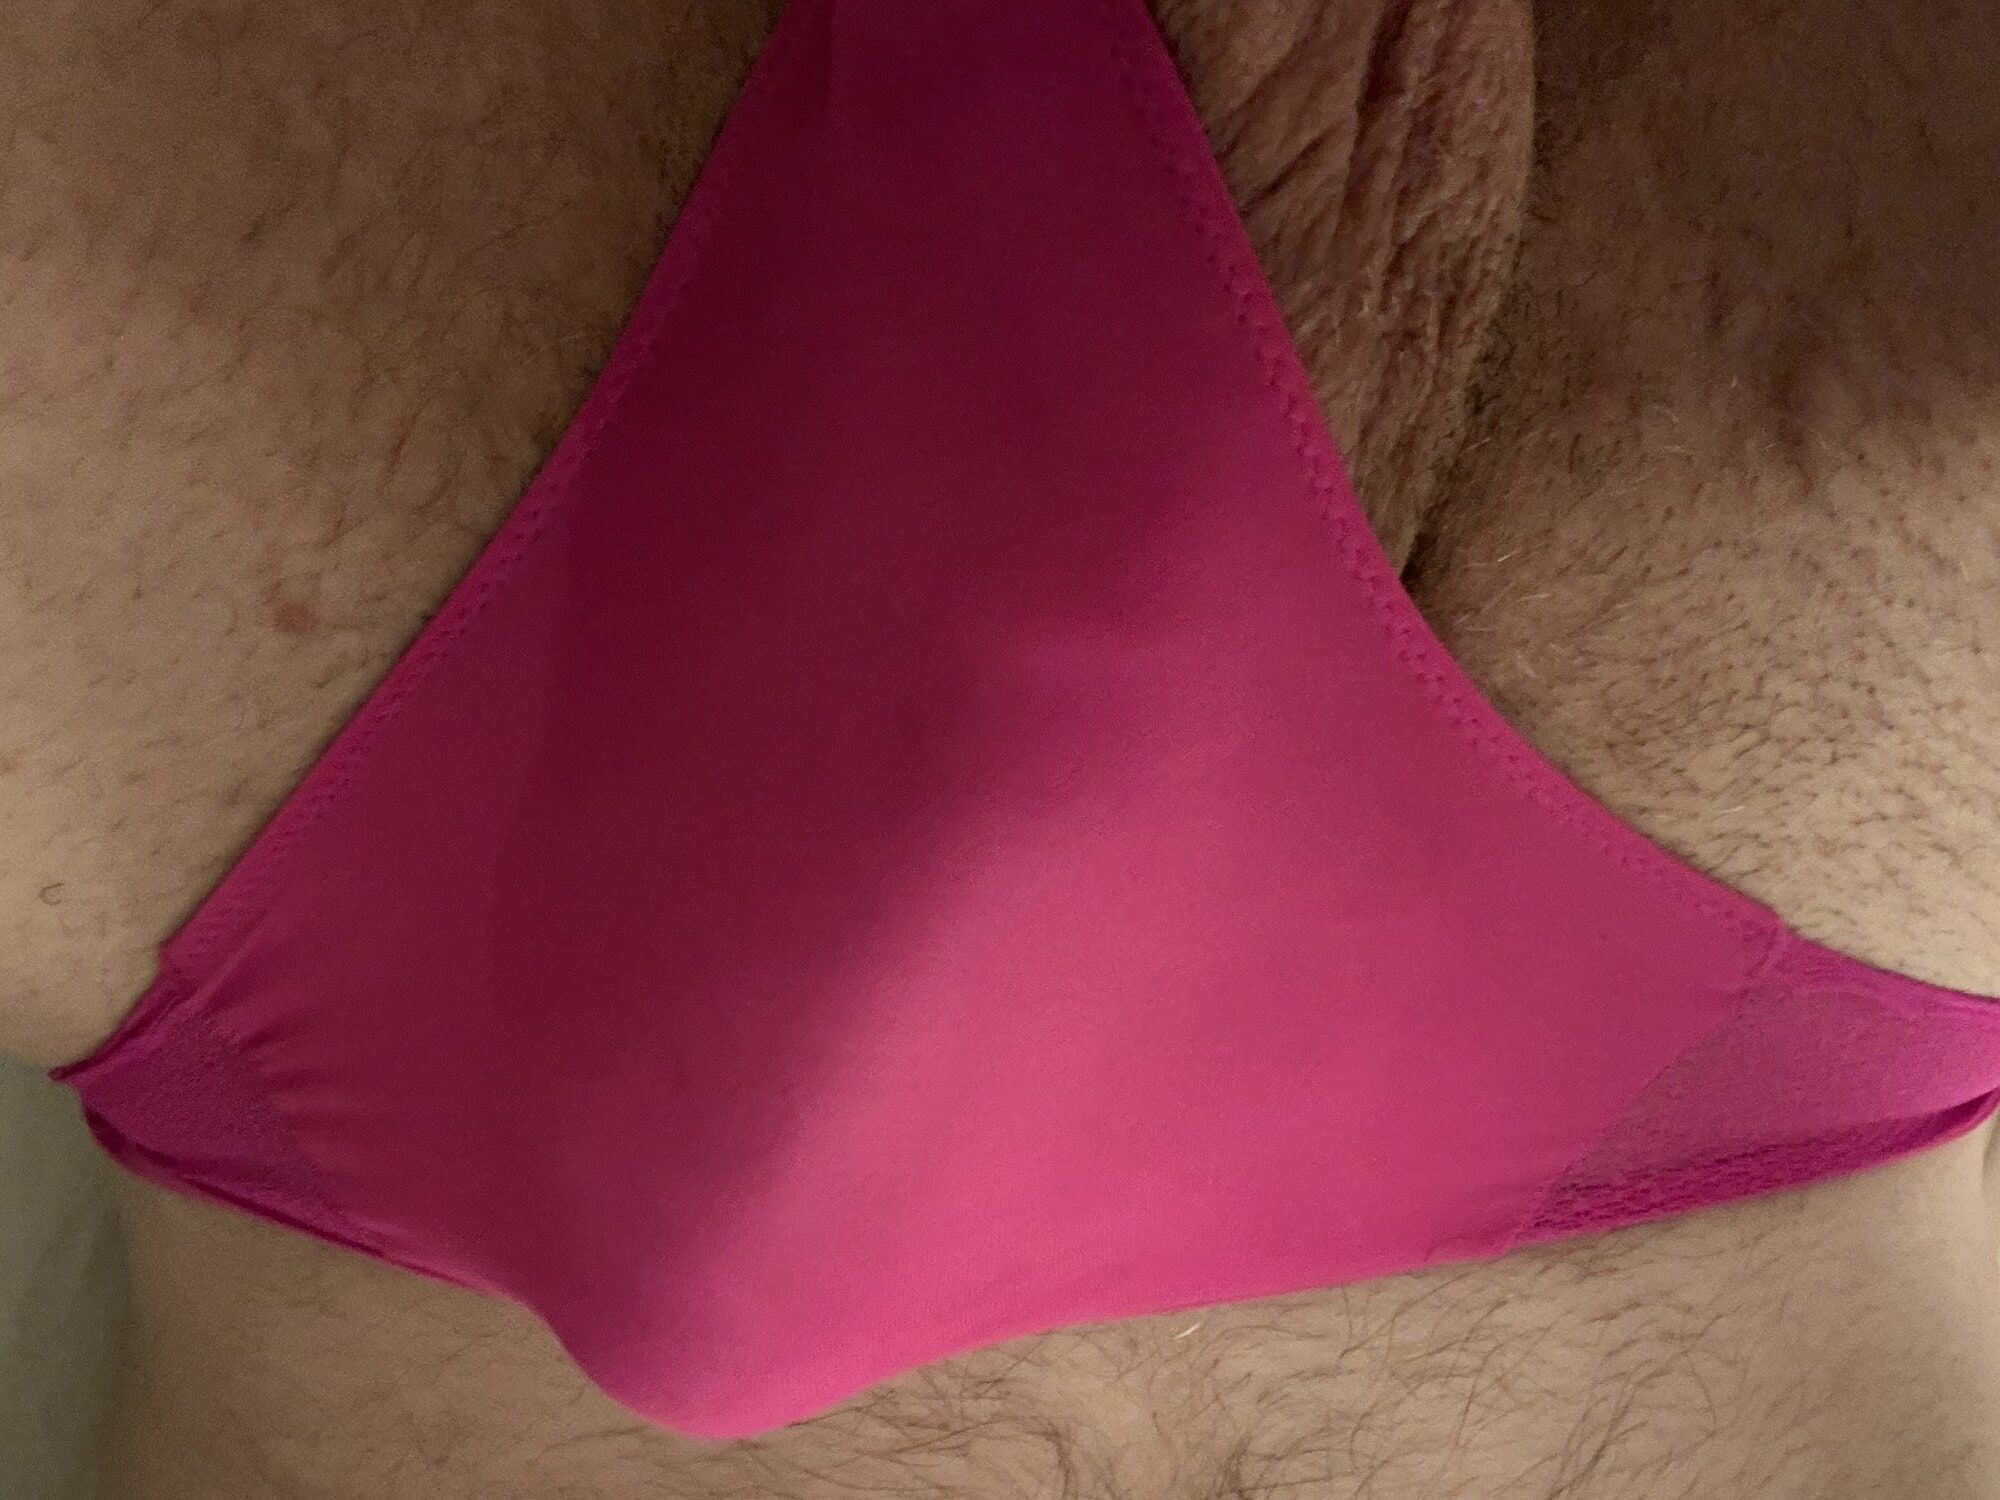 Perfect Penis in Pink Panties #6